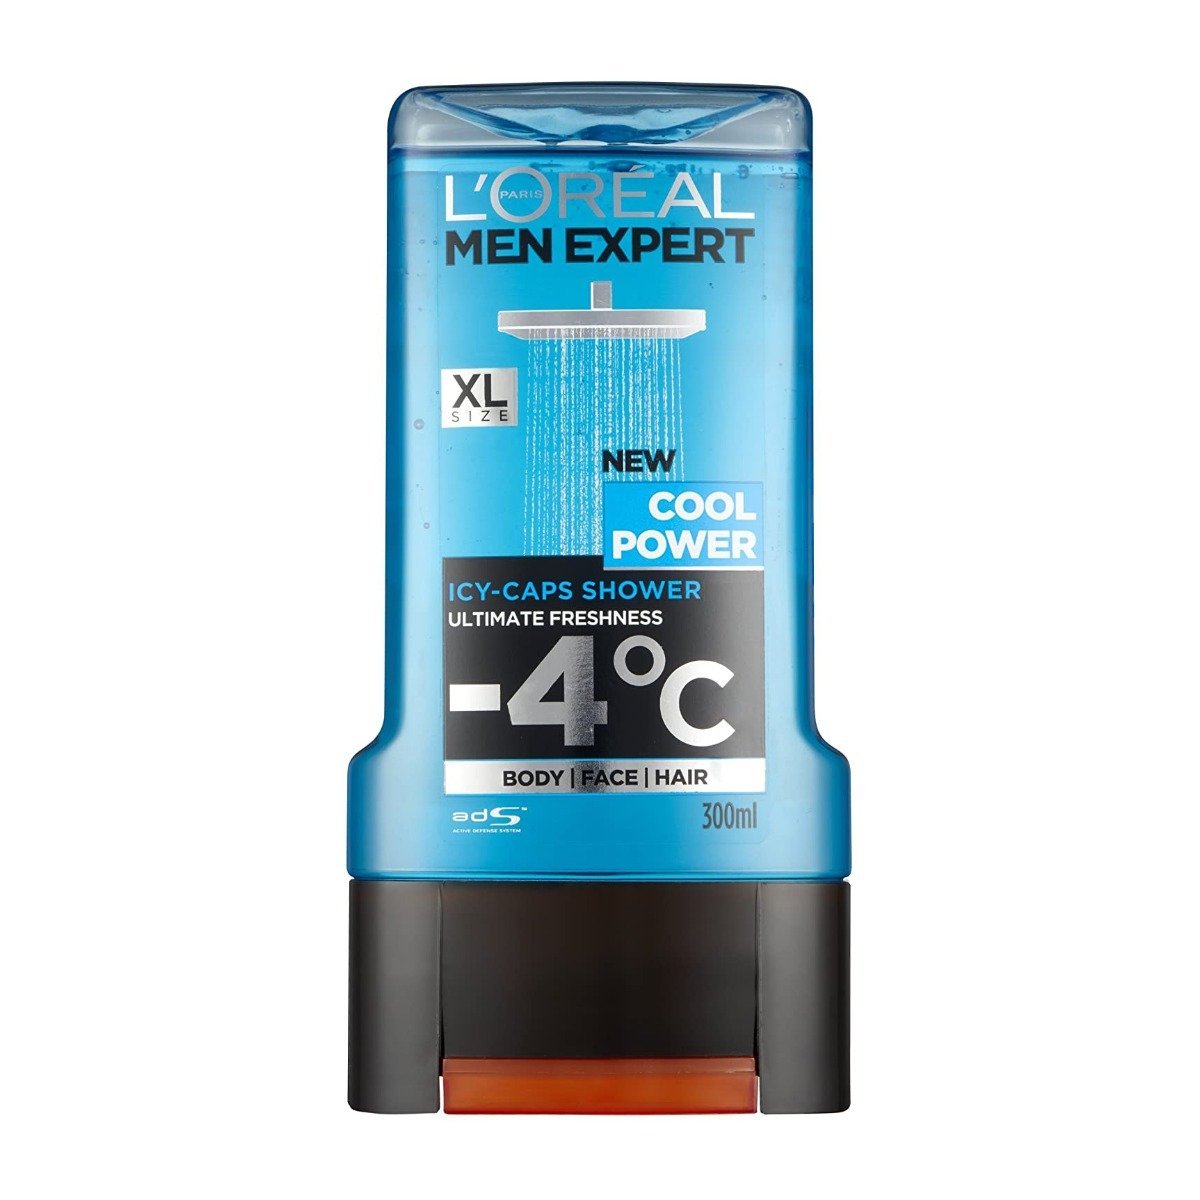 L’Oreal Men Expert Cool Power Shower Gel - 300ml - Bloom Pharmacy